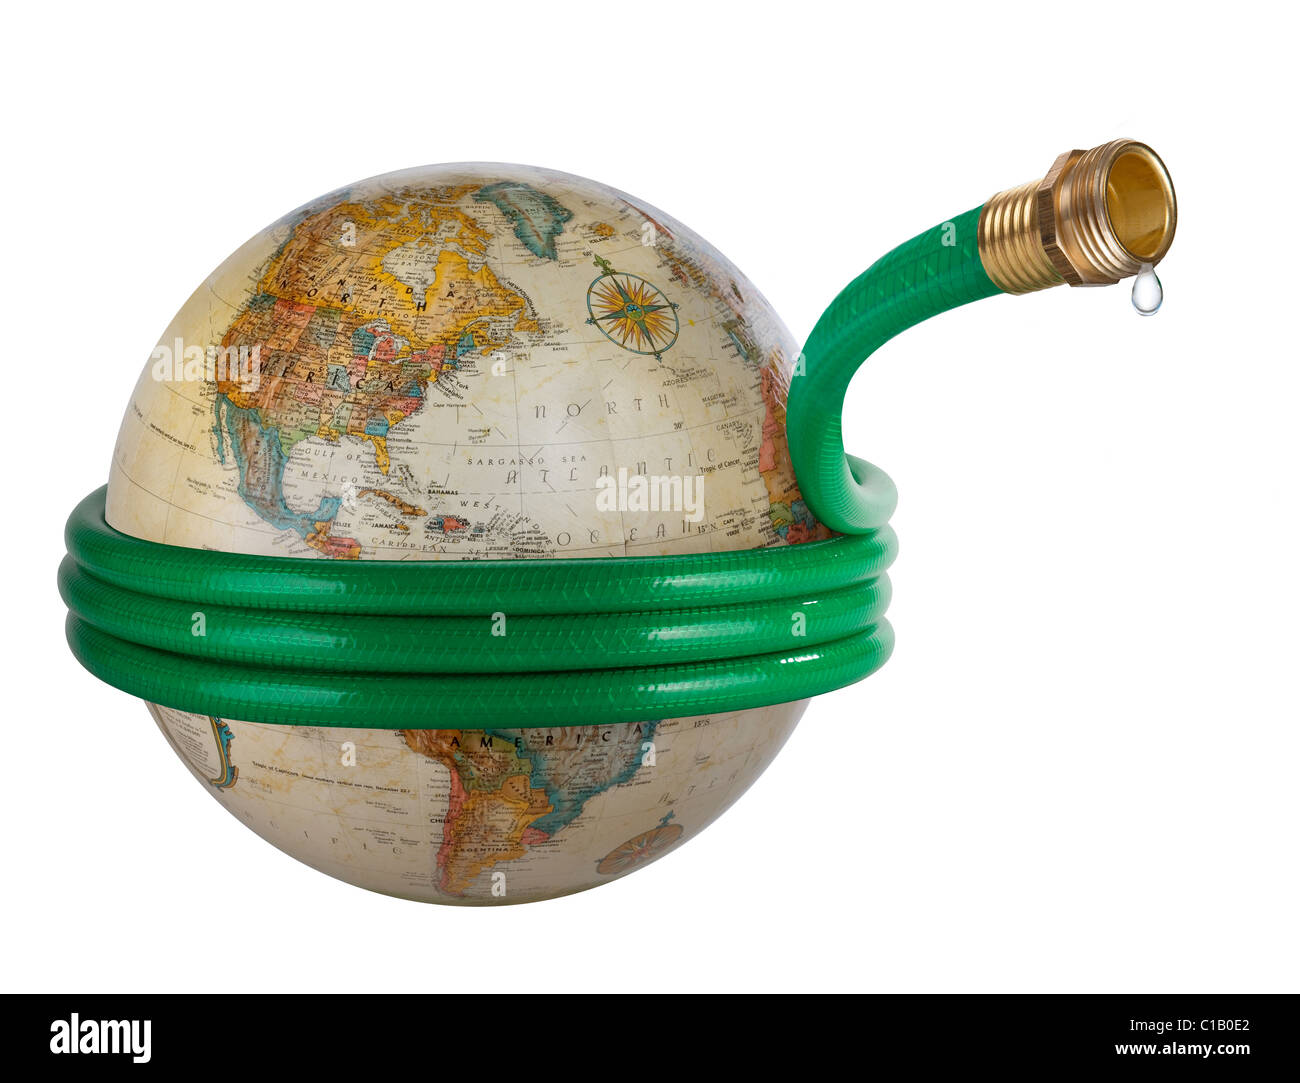 Ein Schlauch um eine Kugel in einem globalen Wasserprobleme Konzept Bild gewickelt. Stockfoto